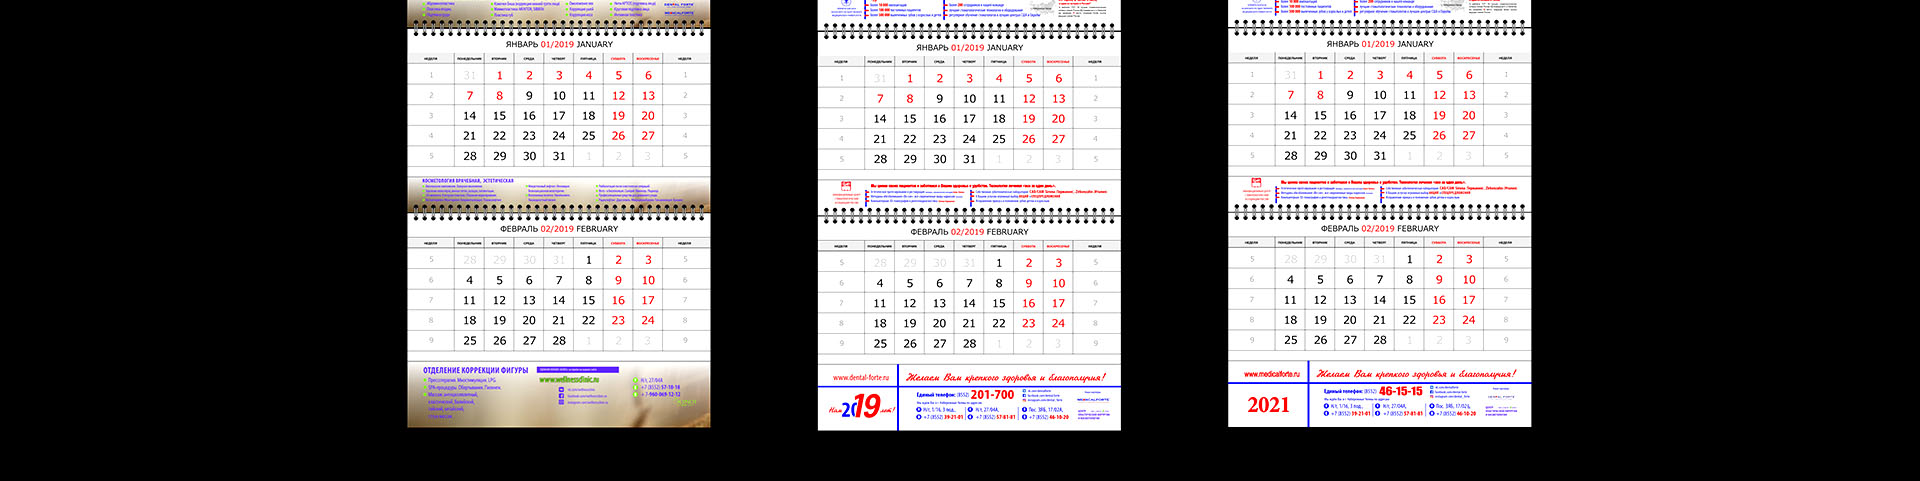 kalendari klinica 2